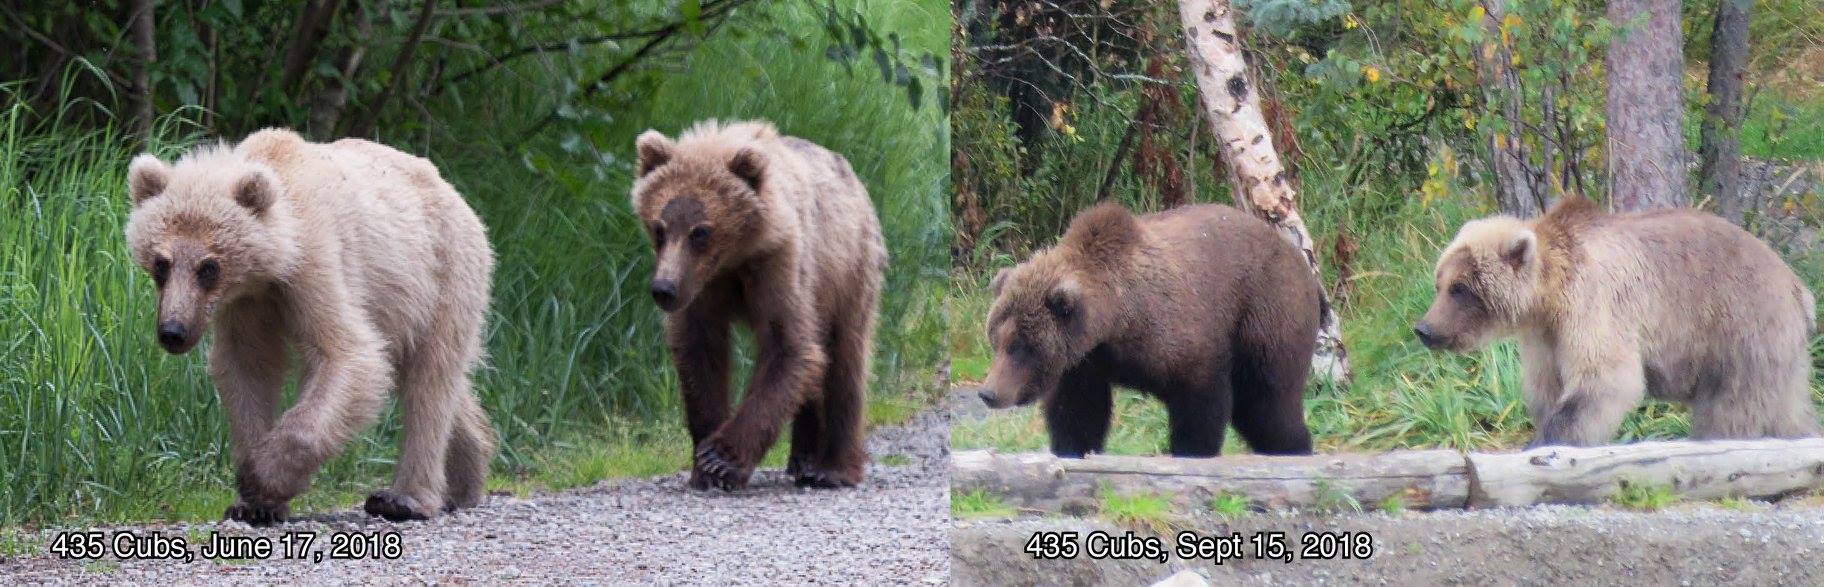 жирные медведи аляски самый жирный медведь фото отвратительные мужики disgusting men